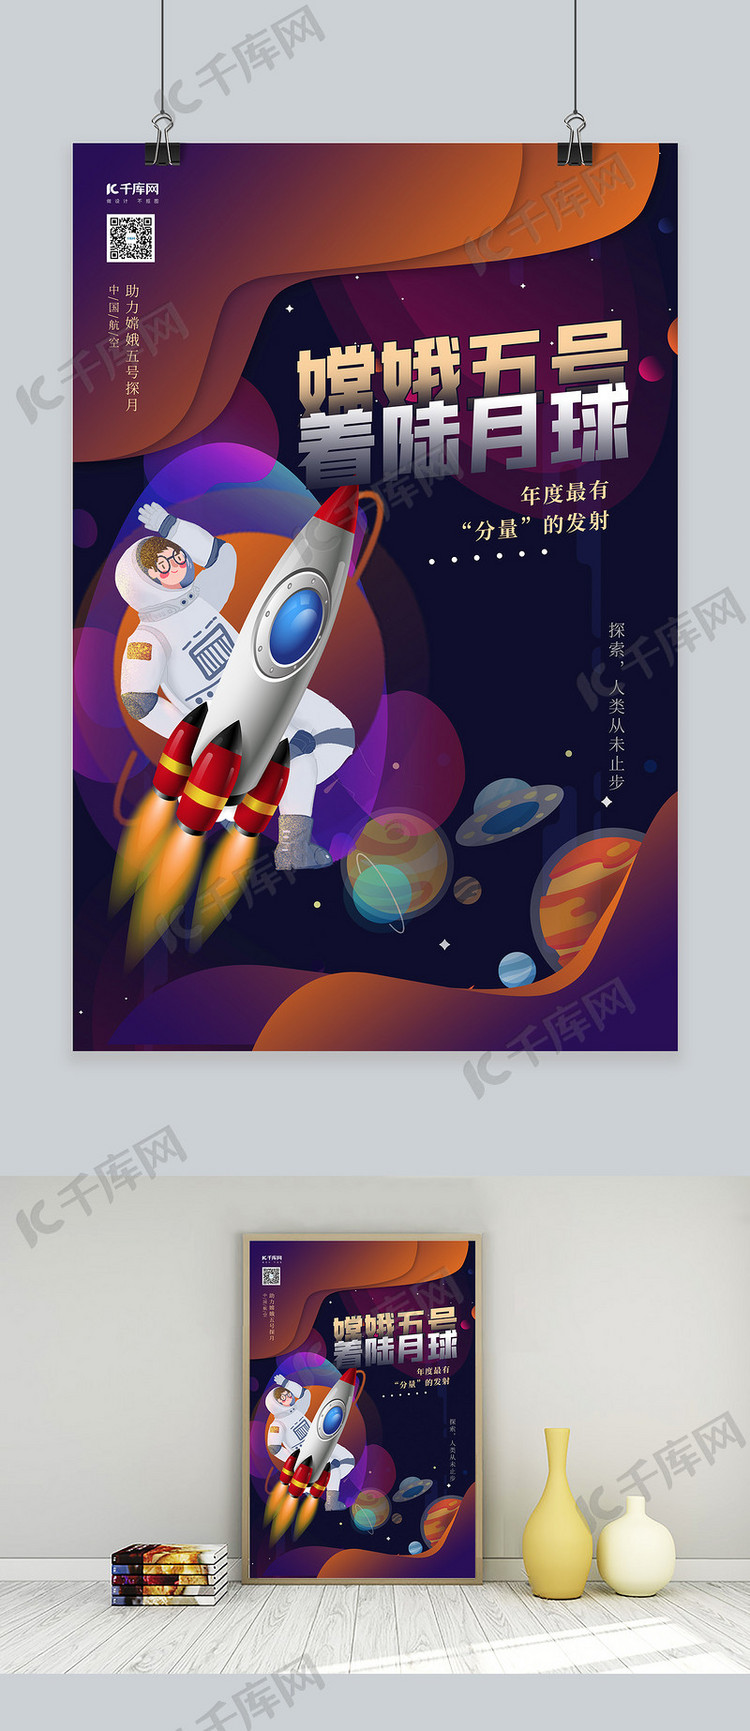 嫦娥五号航天元素紫色创意海报